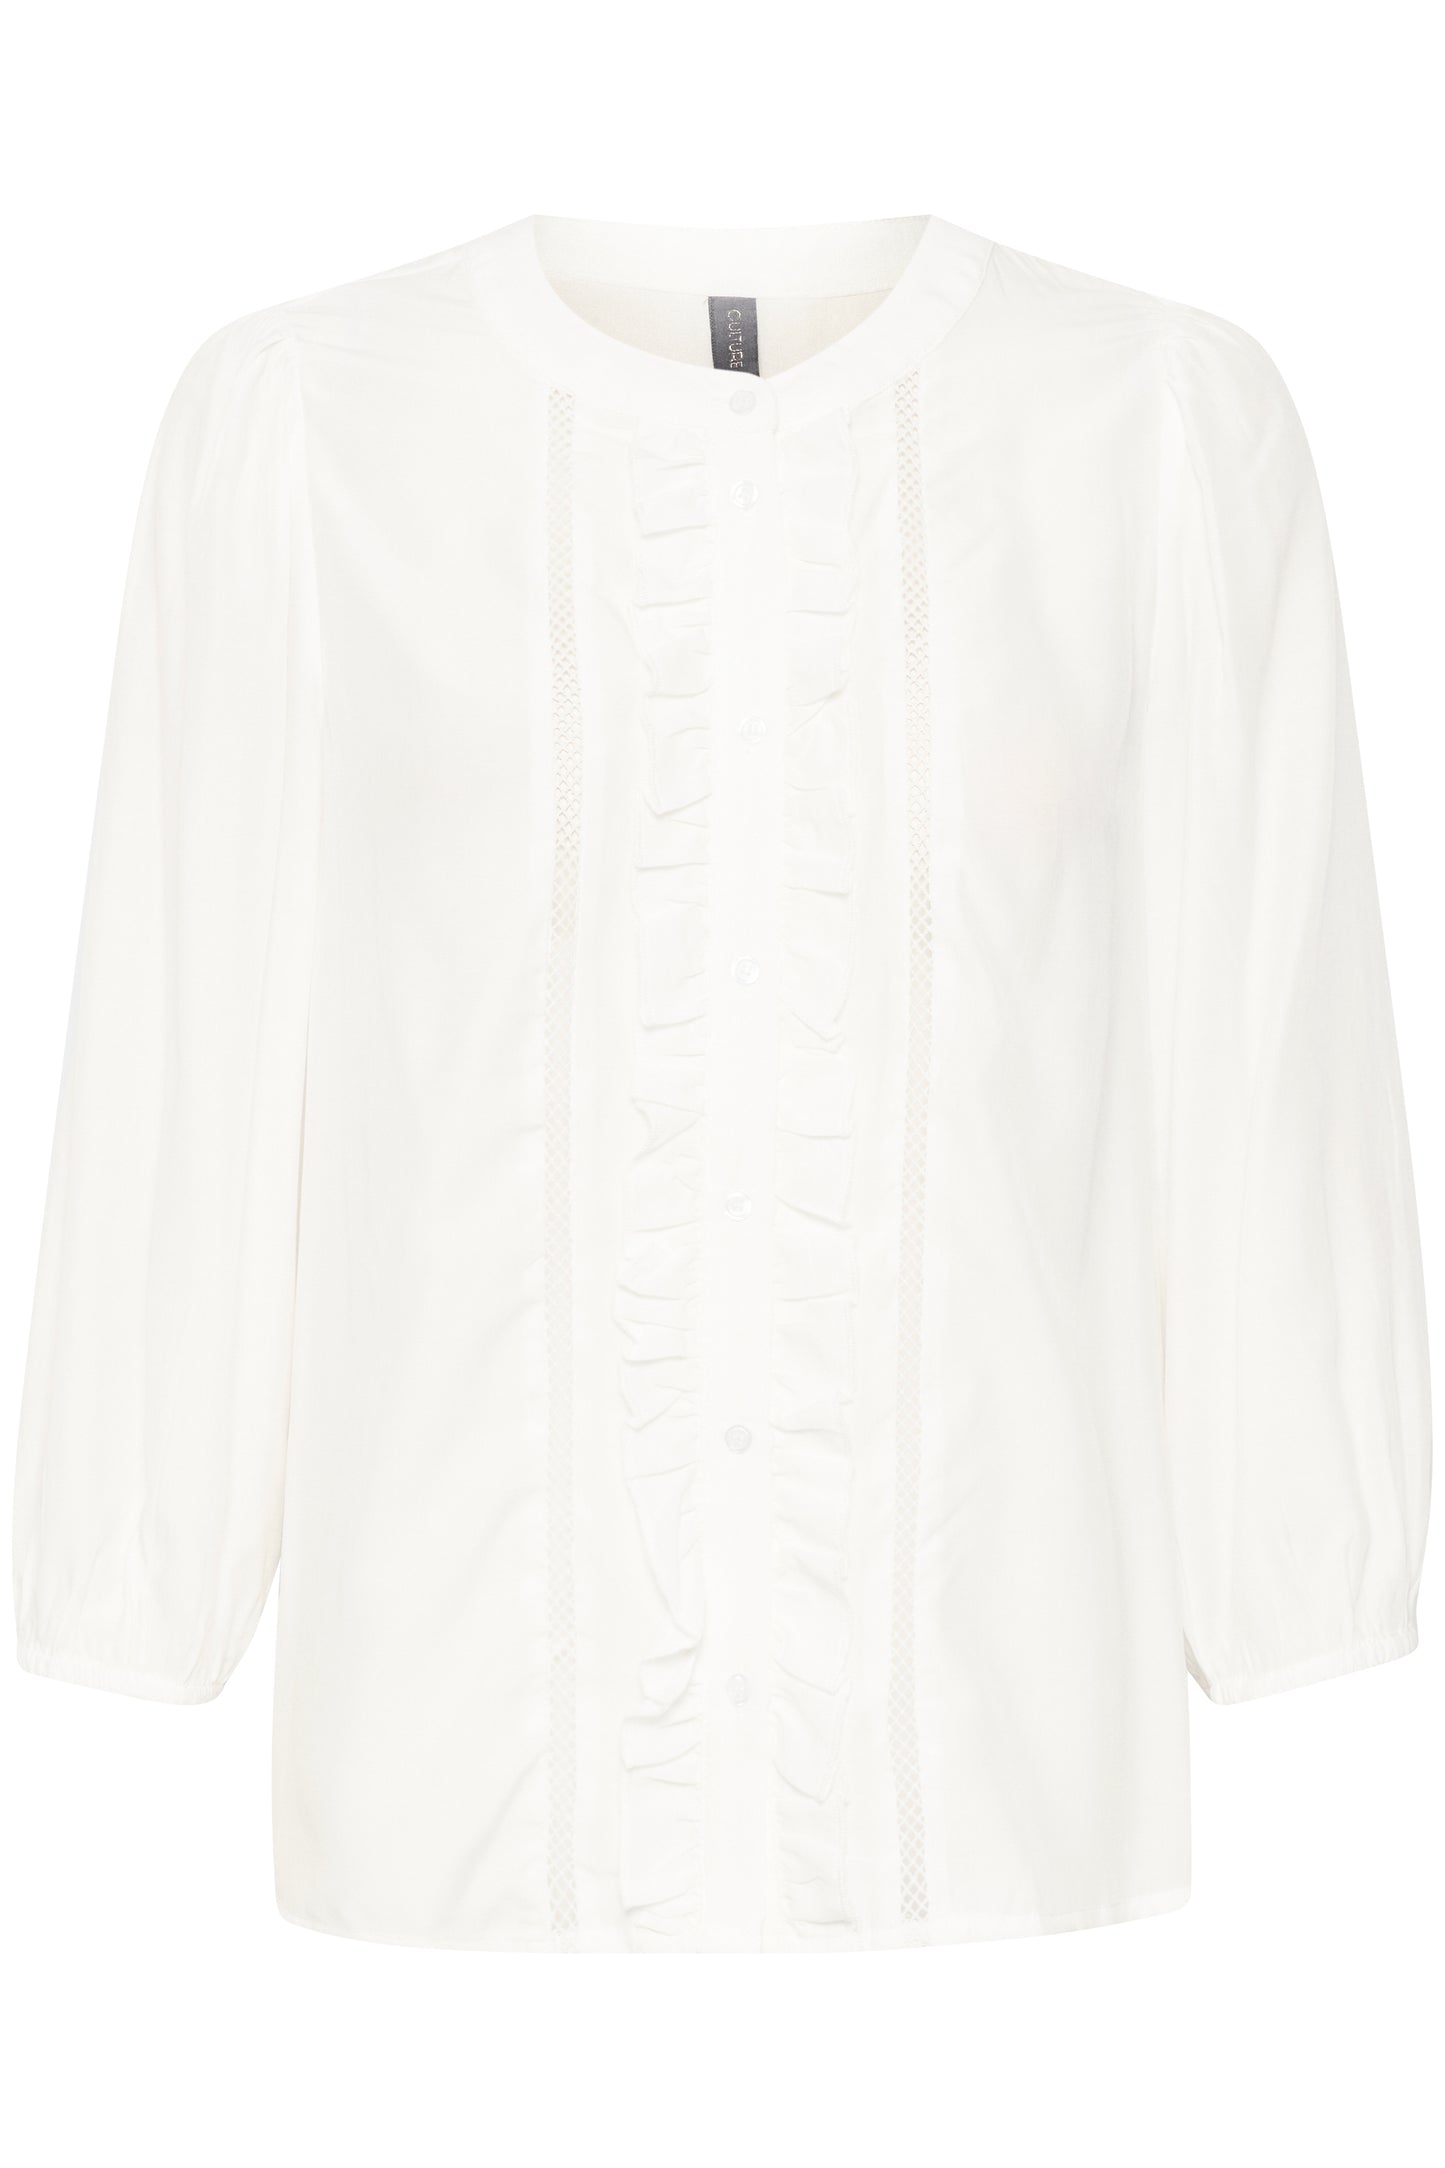 Hvid skjorte bluse med flæser.